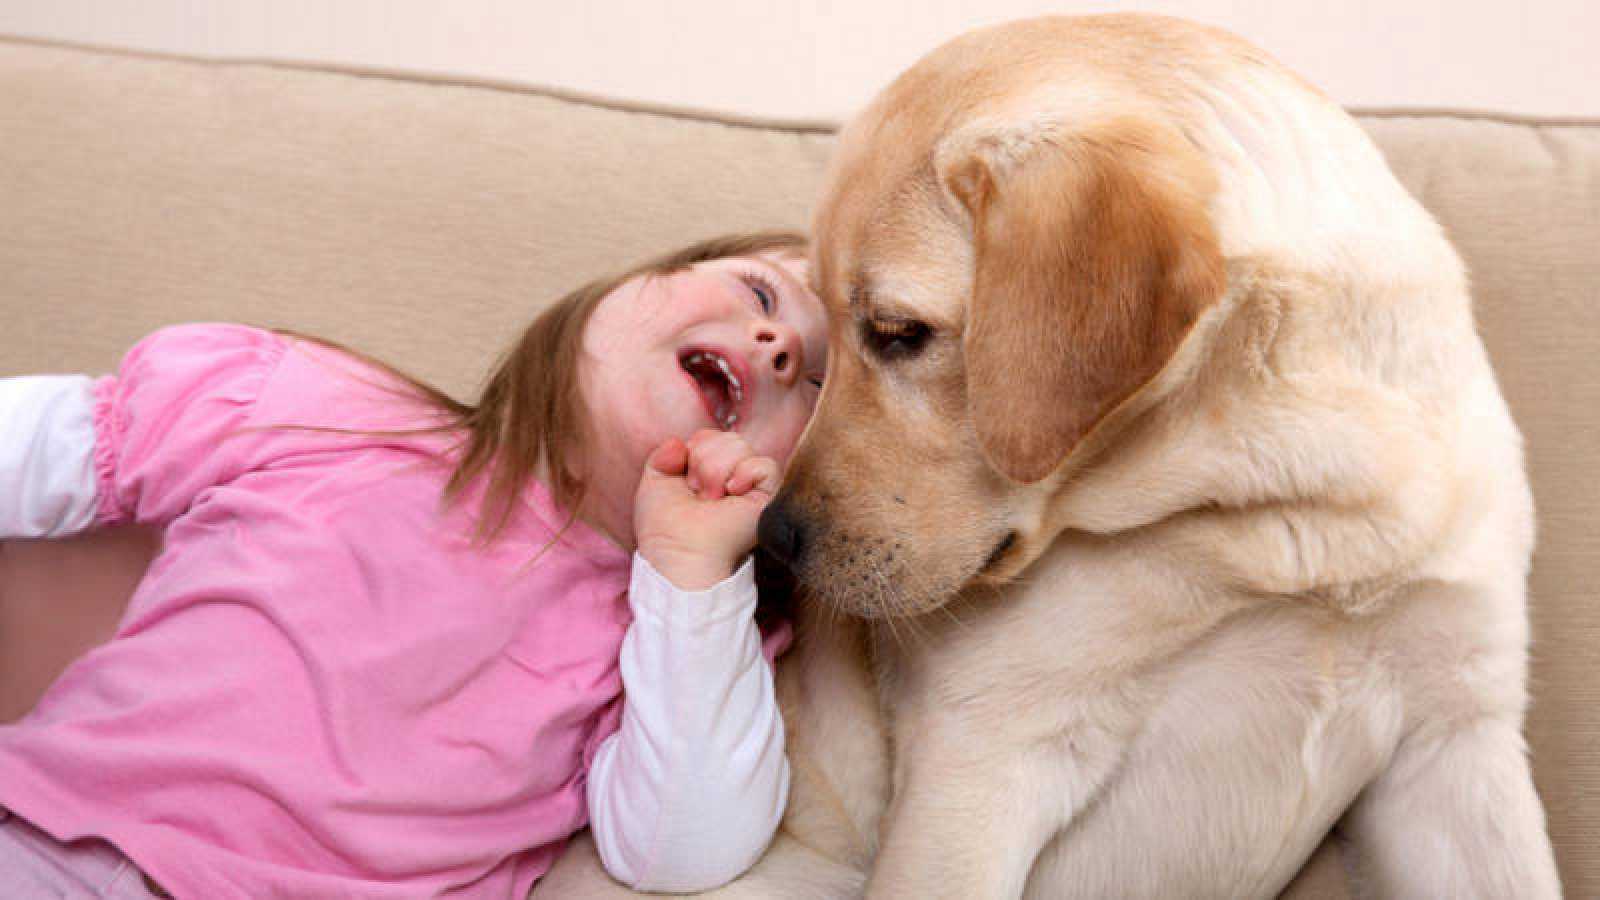 Se prestará asistencia a personas con necesidades especiales a través de terapias con perros entrenados especialmente para facilitar la comunicación.